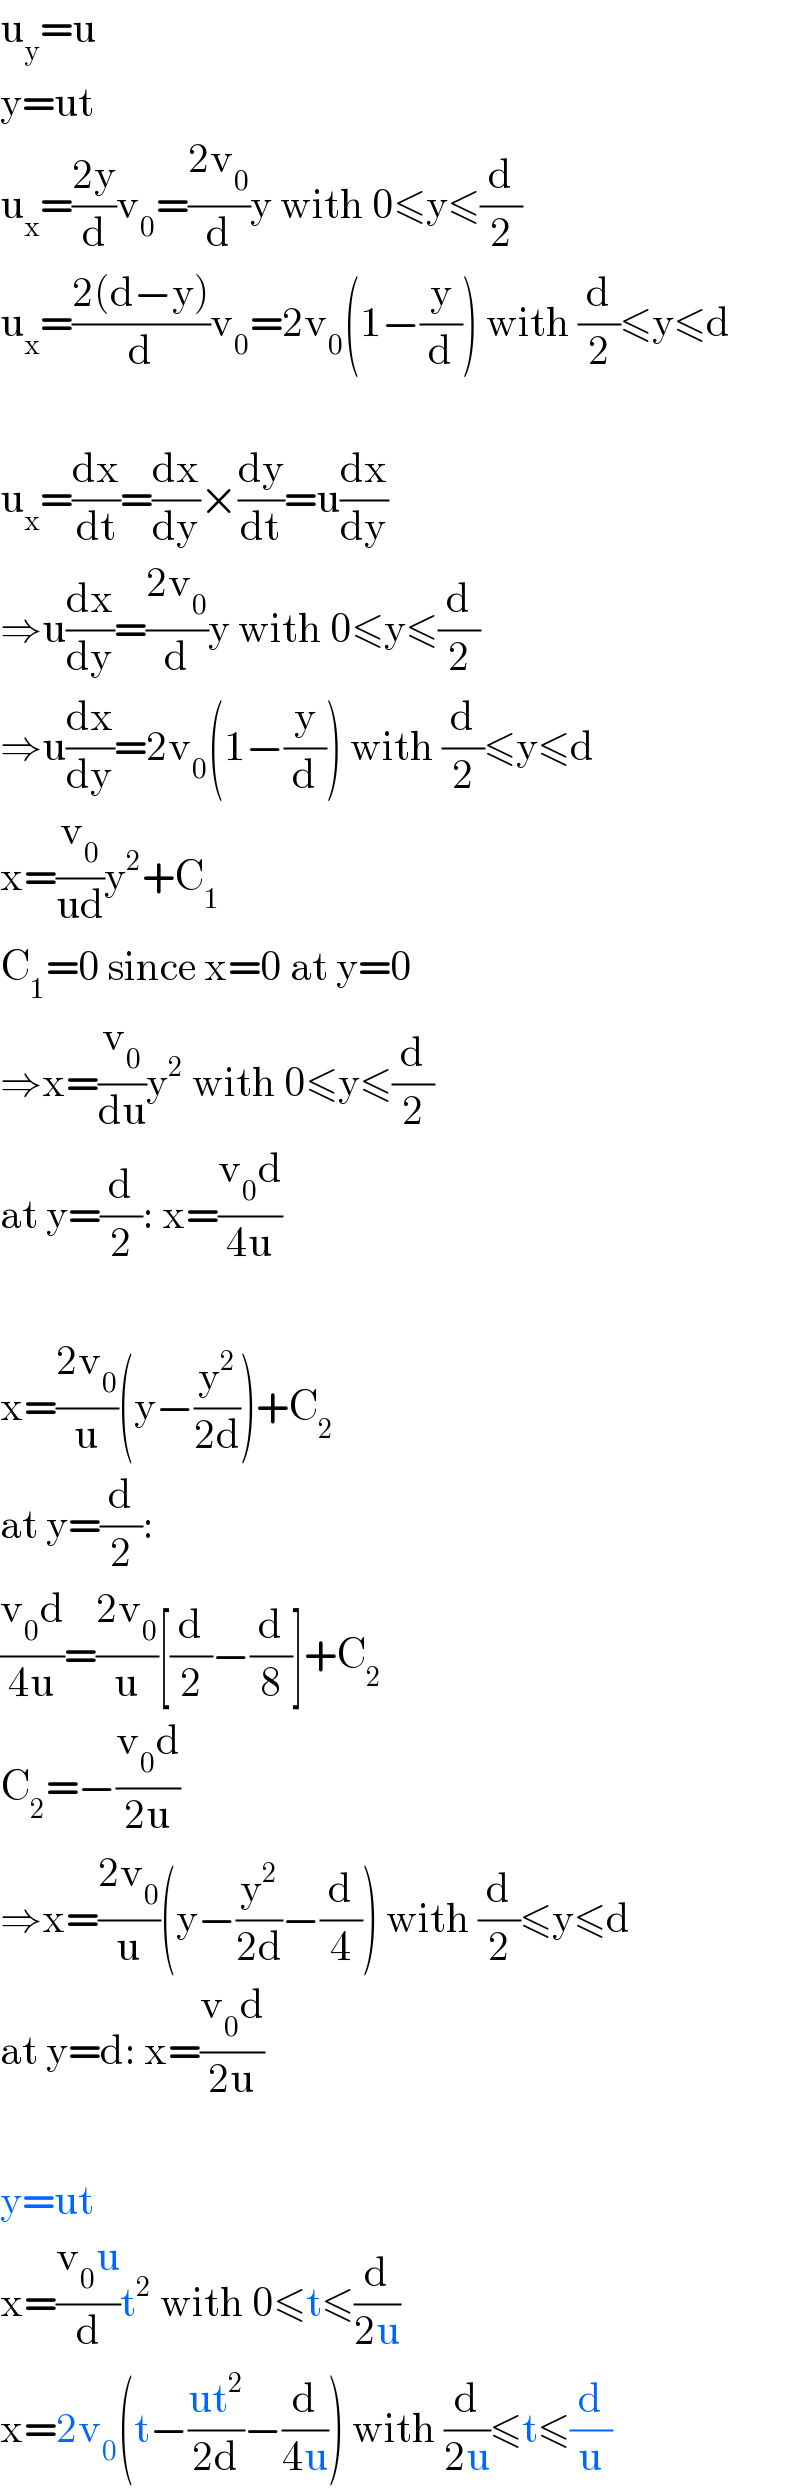 u_y =u  y=ut  u_x =((2y)/d)v_0 =((2v_0 )/d)y with 0≤y≤(d/2)  u_x =((2(d−y))/d)v_0 =2v_0 (1−(y/d)) with (d/2)≤y≤d    u_x =(dx/dt)=(dx/dy)×(dy/dt)=u(dx/dy)  ⇒u(dx/dy)=((2v_0 )/d)y with 0≤y≤(d/2)  ⇒u(dx/dy)=2v_0 (1−(y/d)) with (d/2)≤y≤d  x=(v_0 /(ud))y^2 +C_1   C_1 =0 since x=0 at y=0  ⇒x=(v_0 /du)y^2  with 0≤y≤(d/2)  at y=(d/2): x=((v_0 d)/(4u))    x=((2v_0 )/u)(y−(y^2 /(2d)))+C_2   at y=(d/2):  ((v_0 d)/(4u))=((2v_0 )/u)[(d/2)−(d/8)]+C_2   C_2 =−((v_0 d)/(2u))  ⇒x=((2v_0 )/u)(y−(y^2 /(2d))−(d/4)) with (d/2)≤y≤d  at y=d: x=((v_0 d)/(2u))    y=ut  x=((v_0 u)/d)t^2  with 0≤t≤(d/(2u))  x=2v_0 (t−((ut^2 )/(2d))−(d/(4u))) with (d/(2u))≤t≤(d/u)  